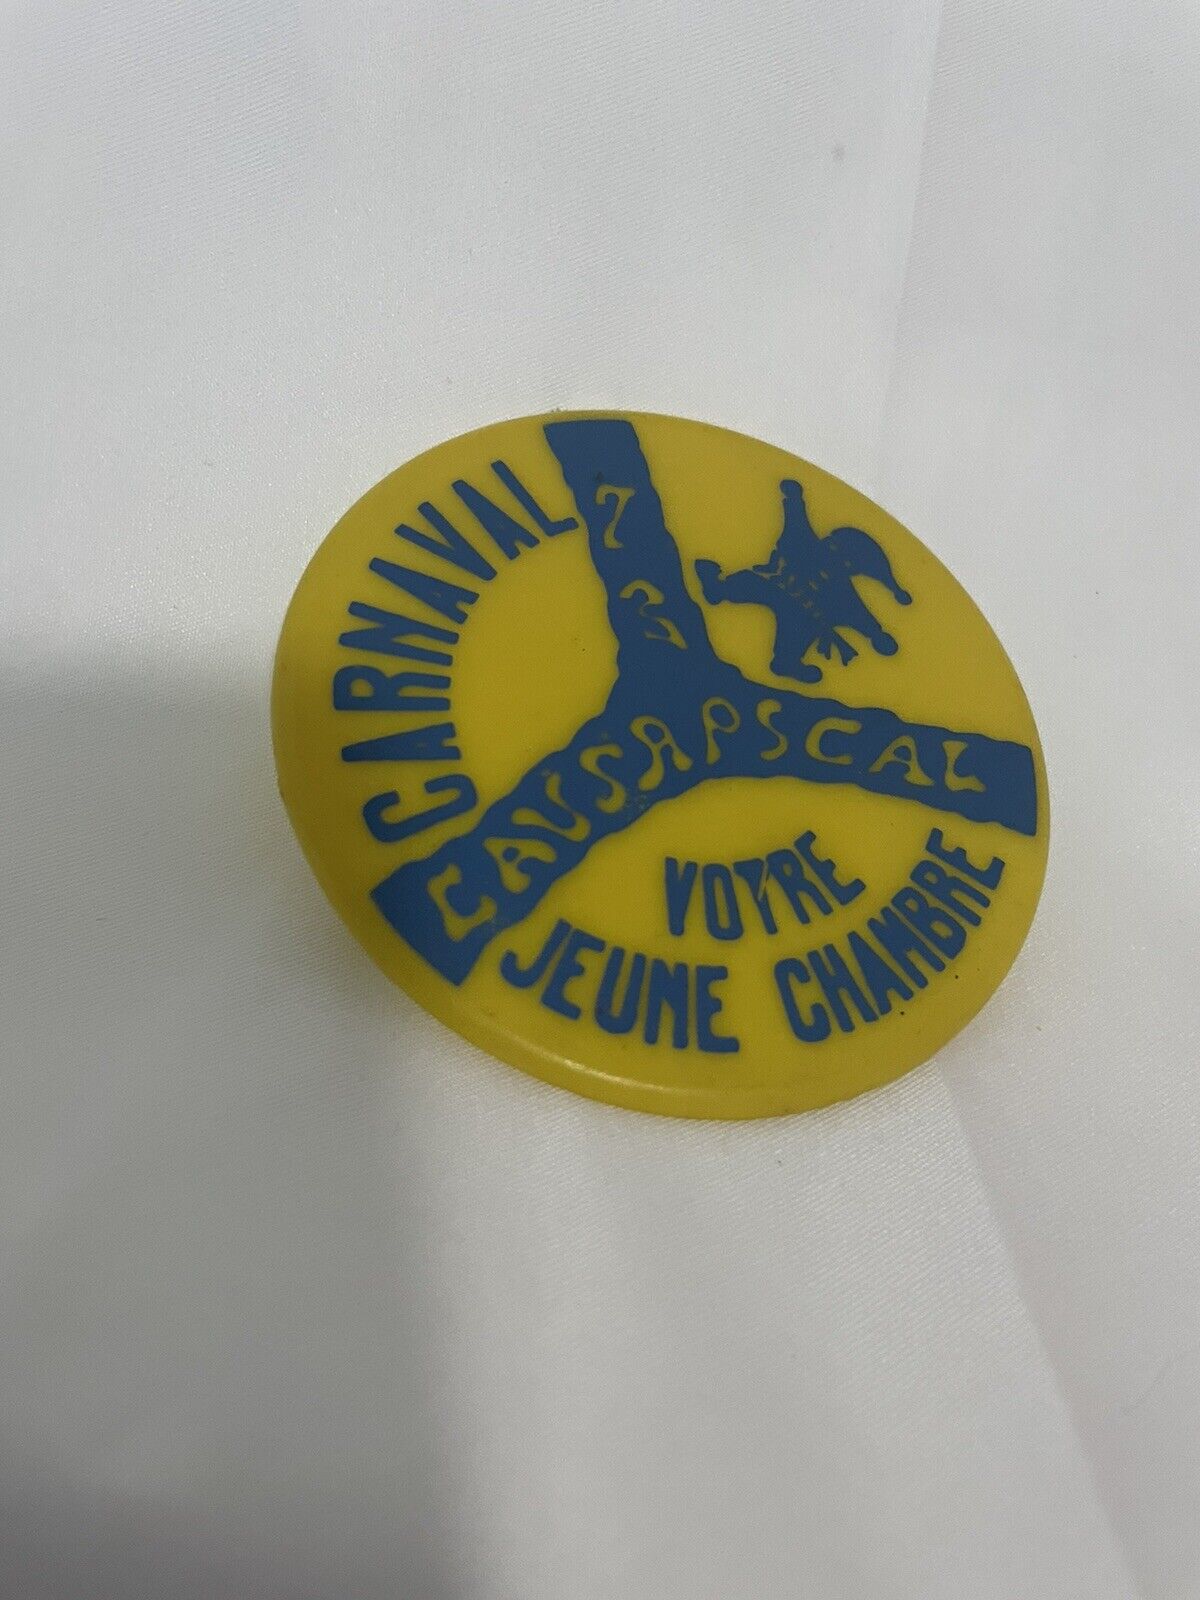 Vintage Carnival Plastic Votre Jeune Chambre Memorabilia Vintage Pin Button